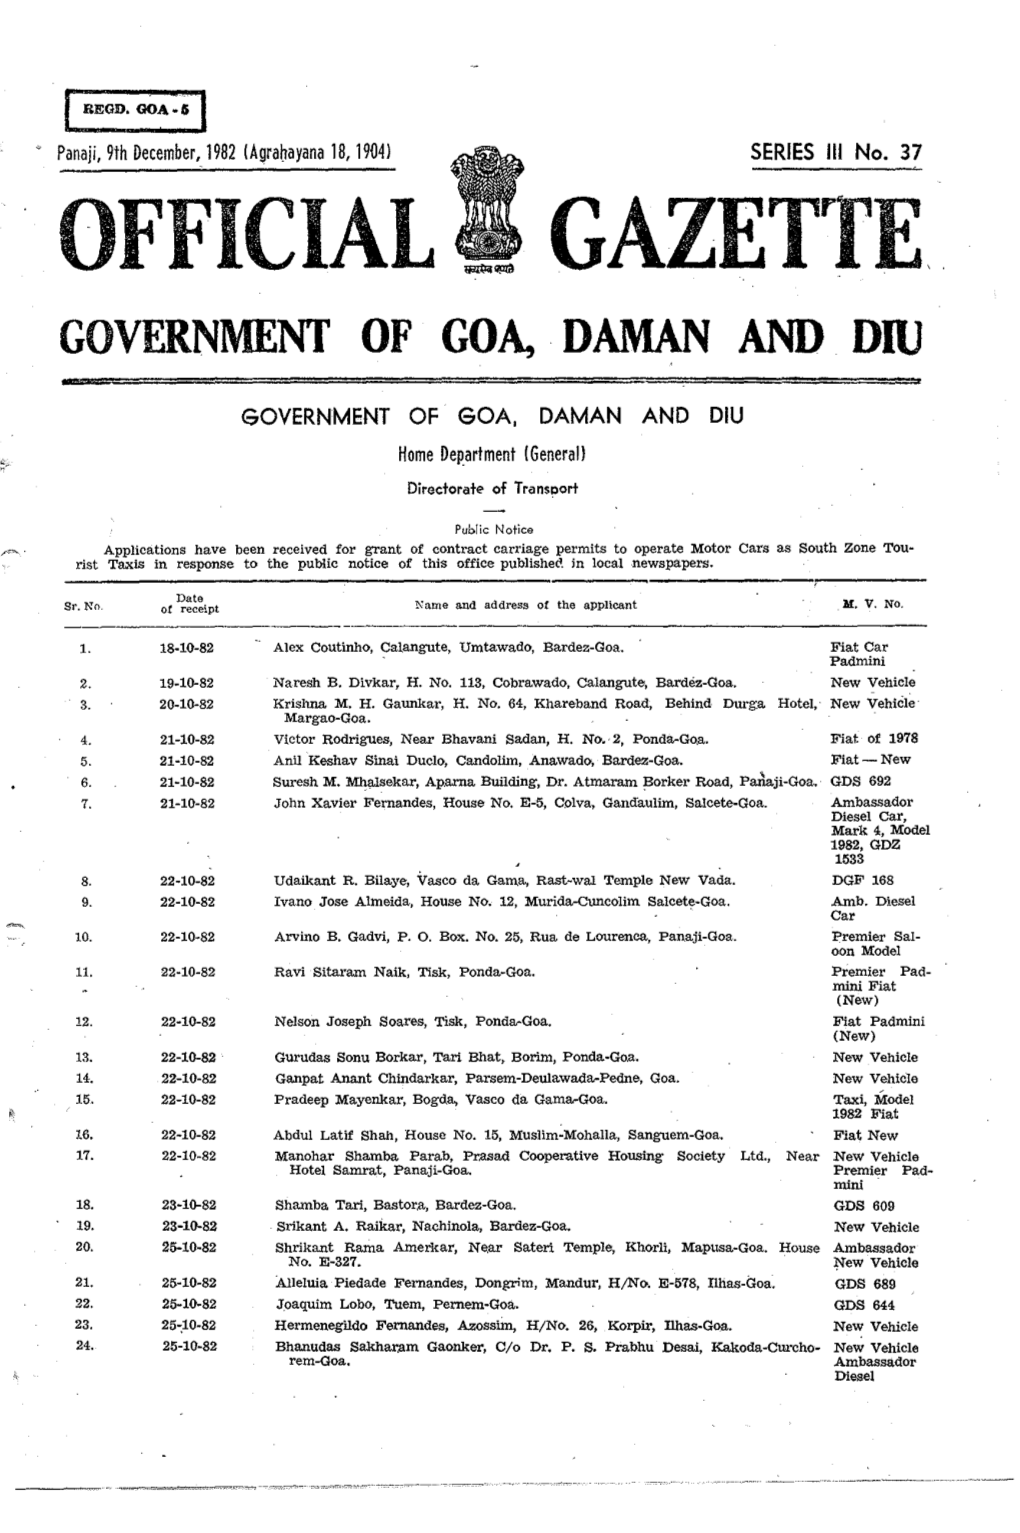 Official Gazette Government of Goa